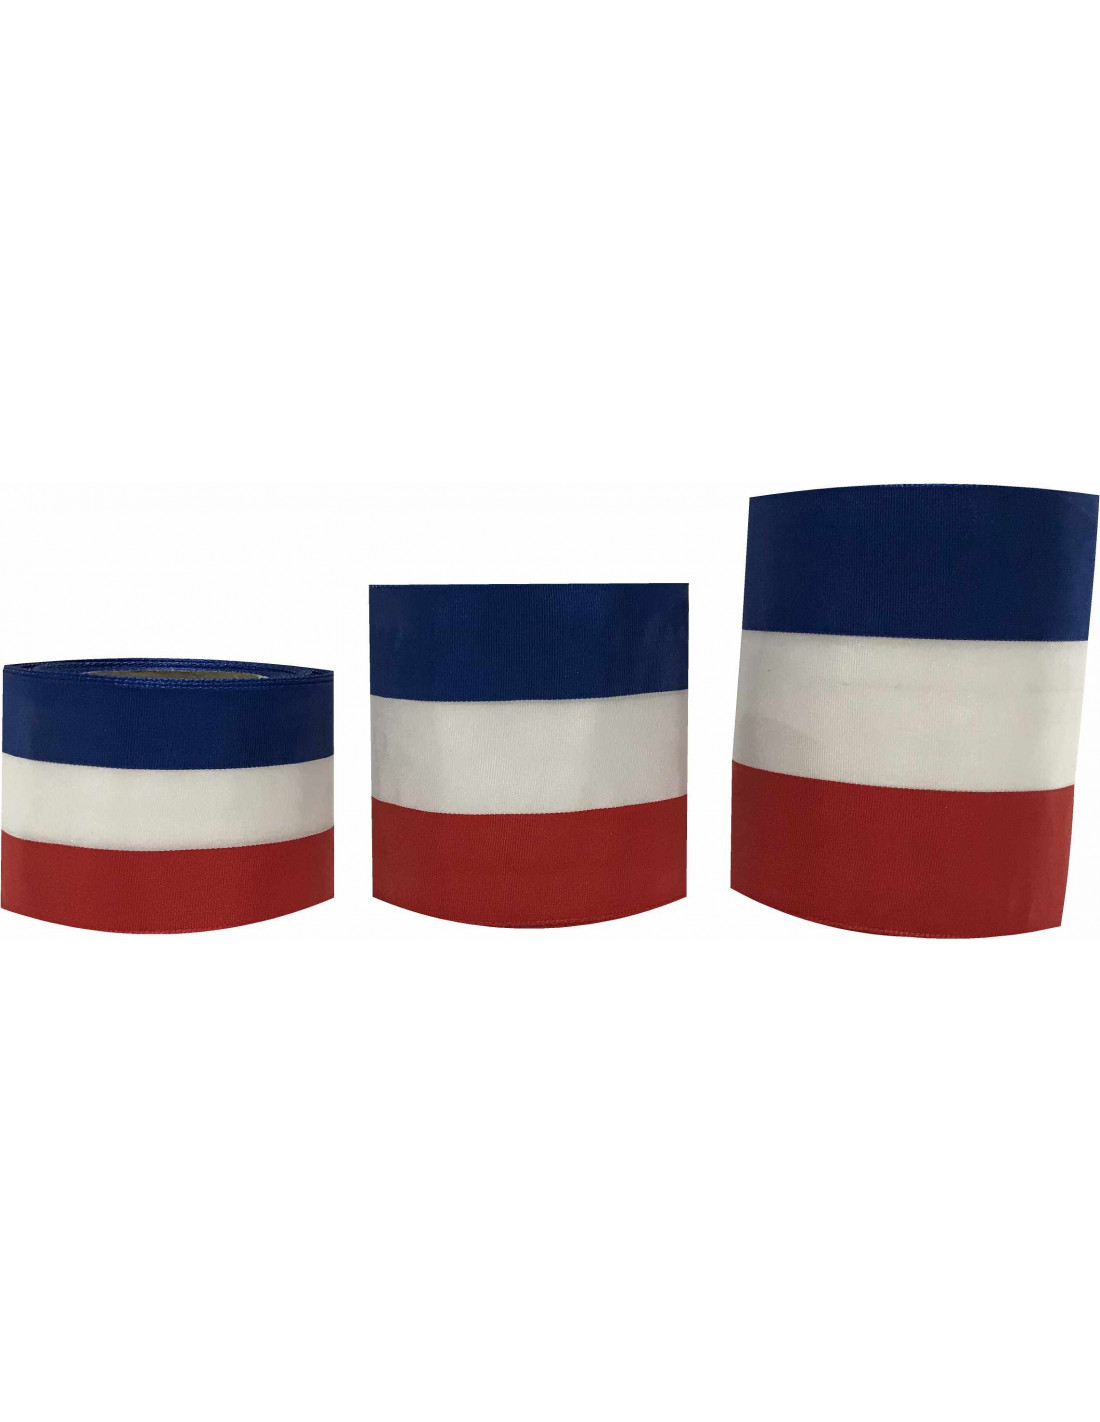 Achat ruban d'inauguration français (tricolore) - DOUBLET